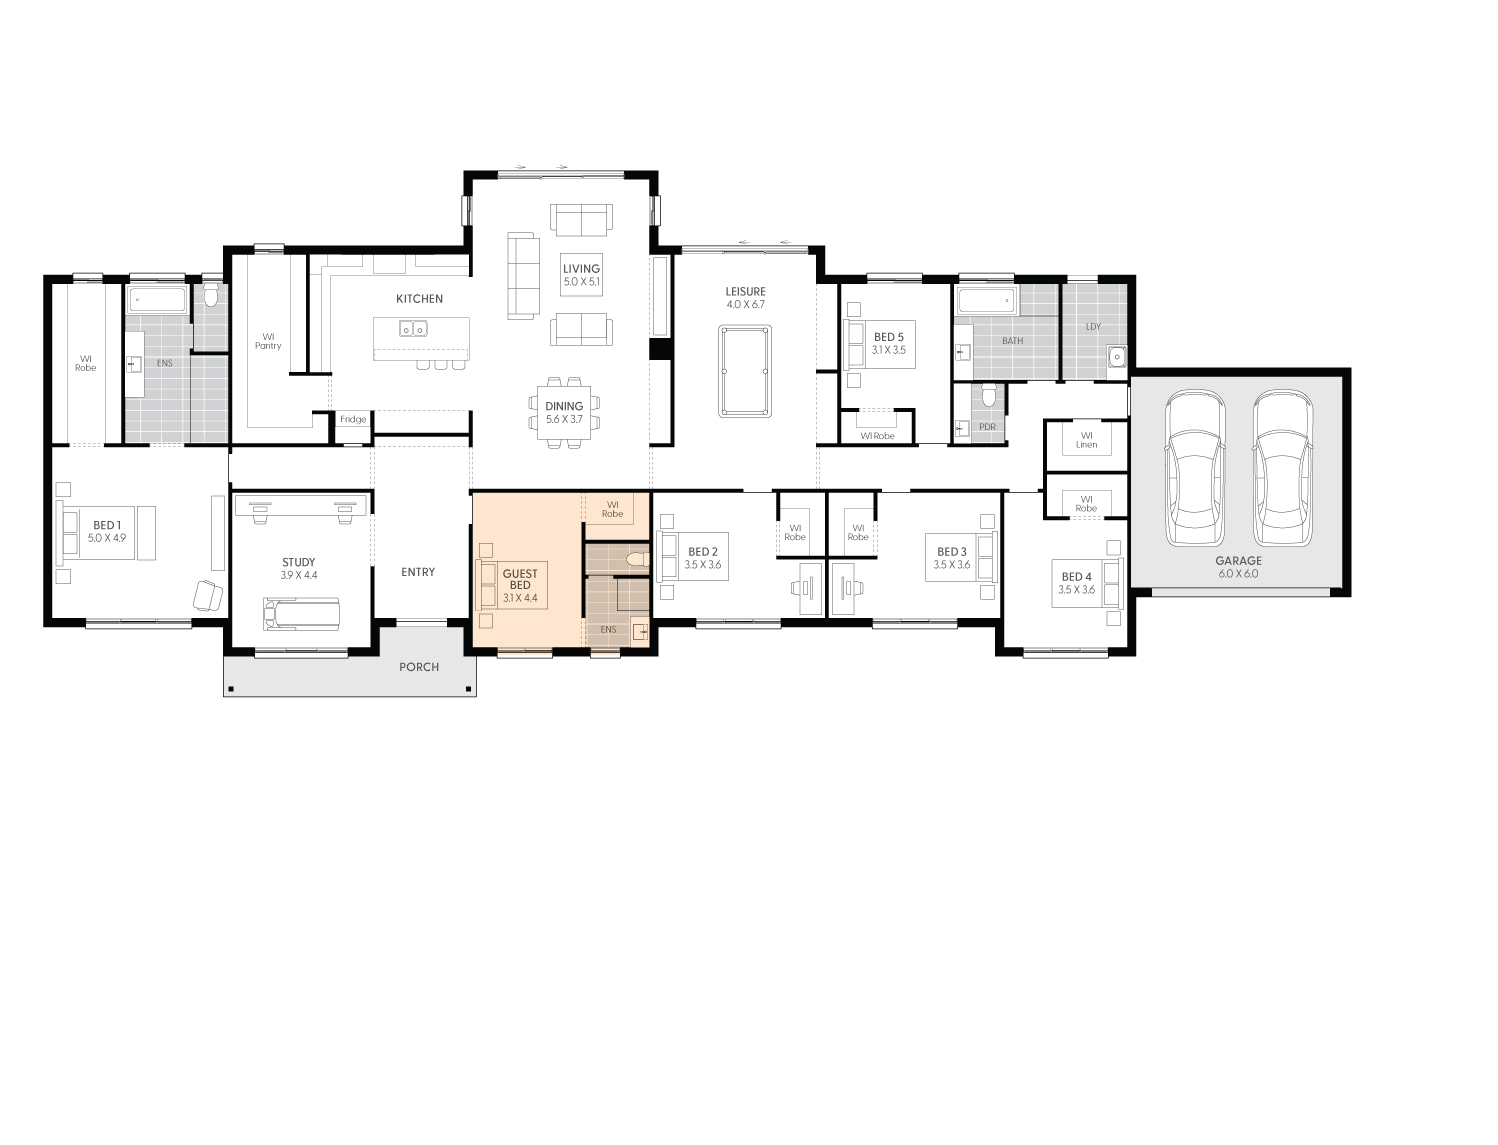 Lethbridge42-floor-plan--GUEST-BEDROOM-IN-LIEU-FAMILY-ROOM-LHS.jpg 